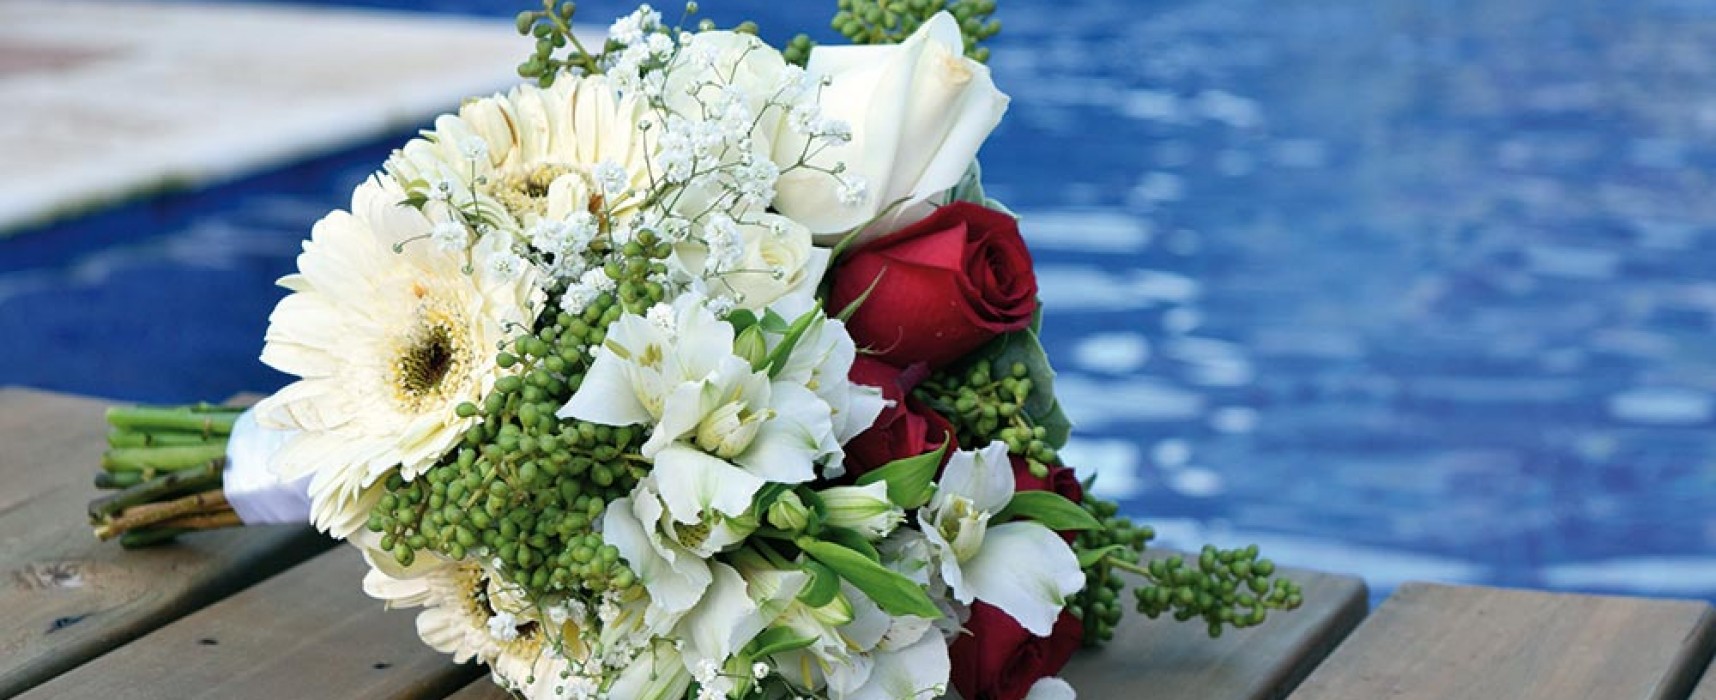 Casar em Ilhabela: Ilha Plaza Hotel abre seu espaço para casamentos e eventos